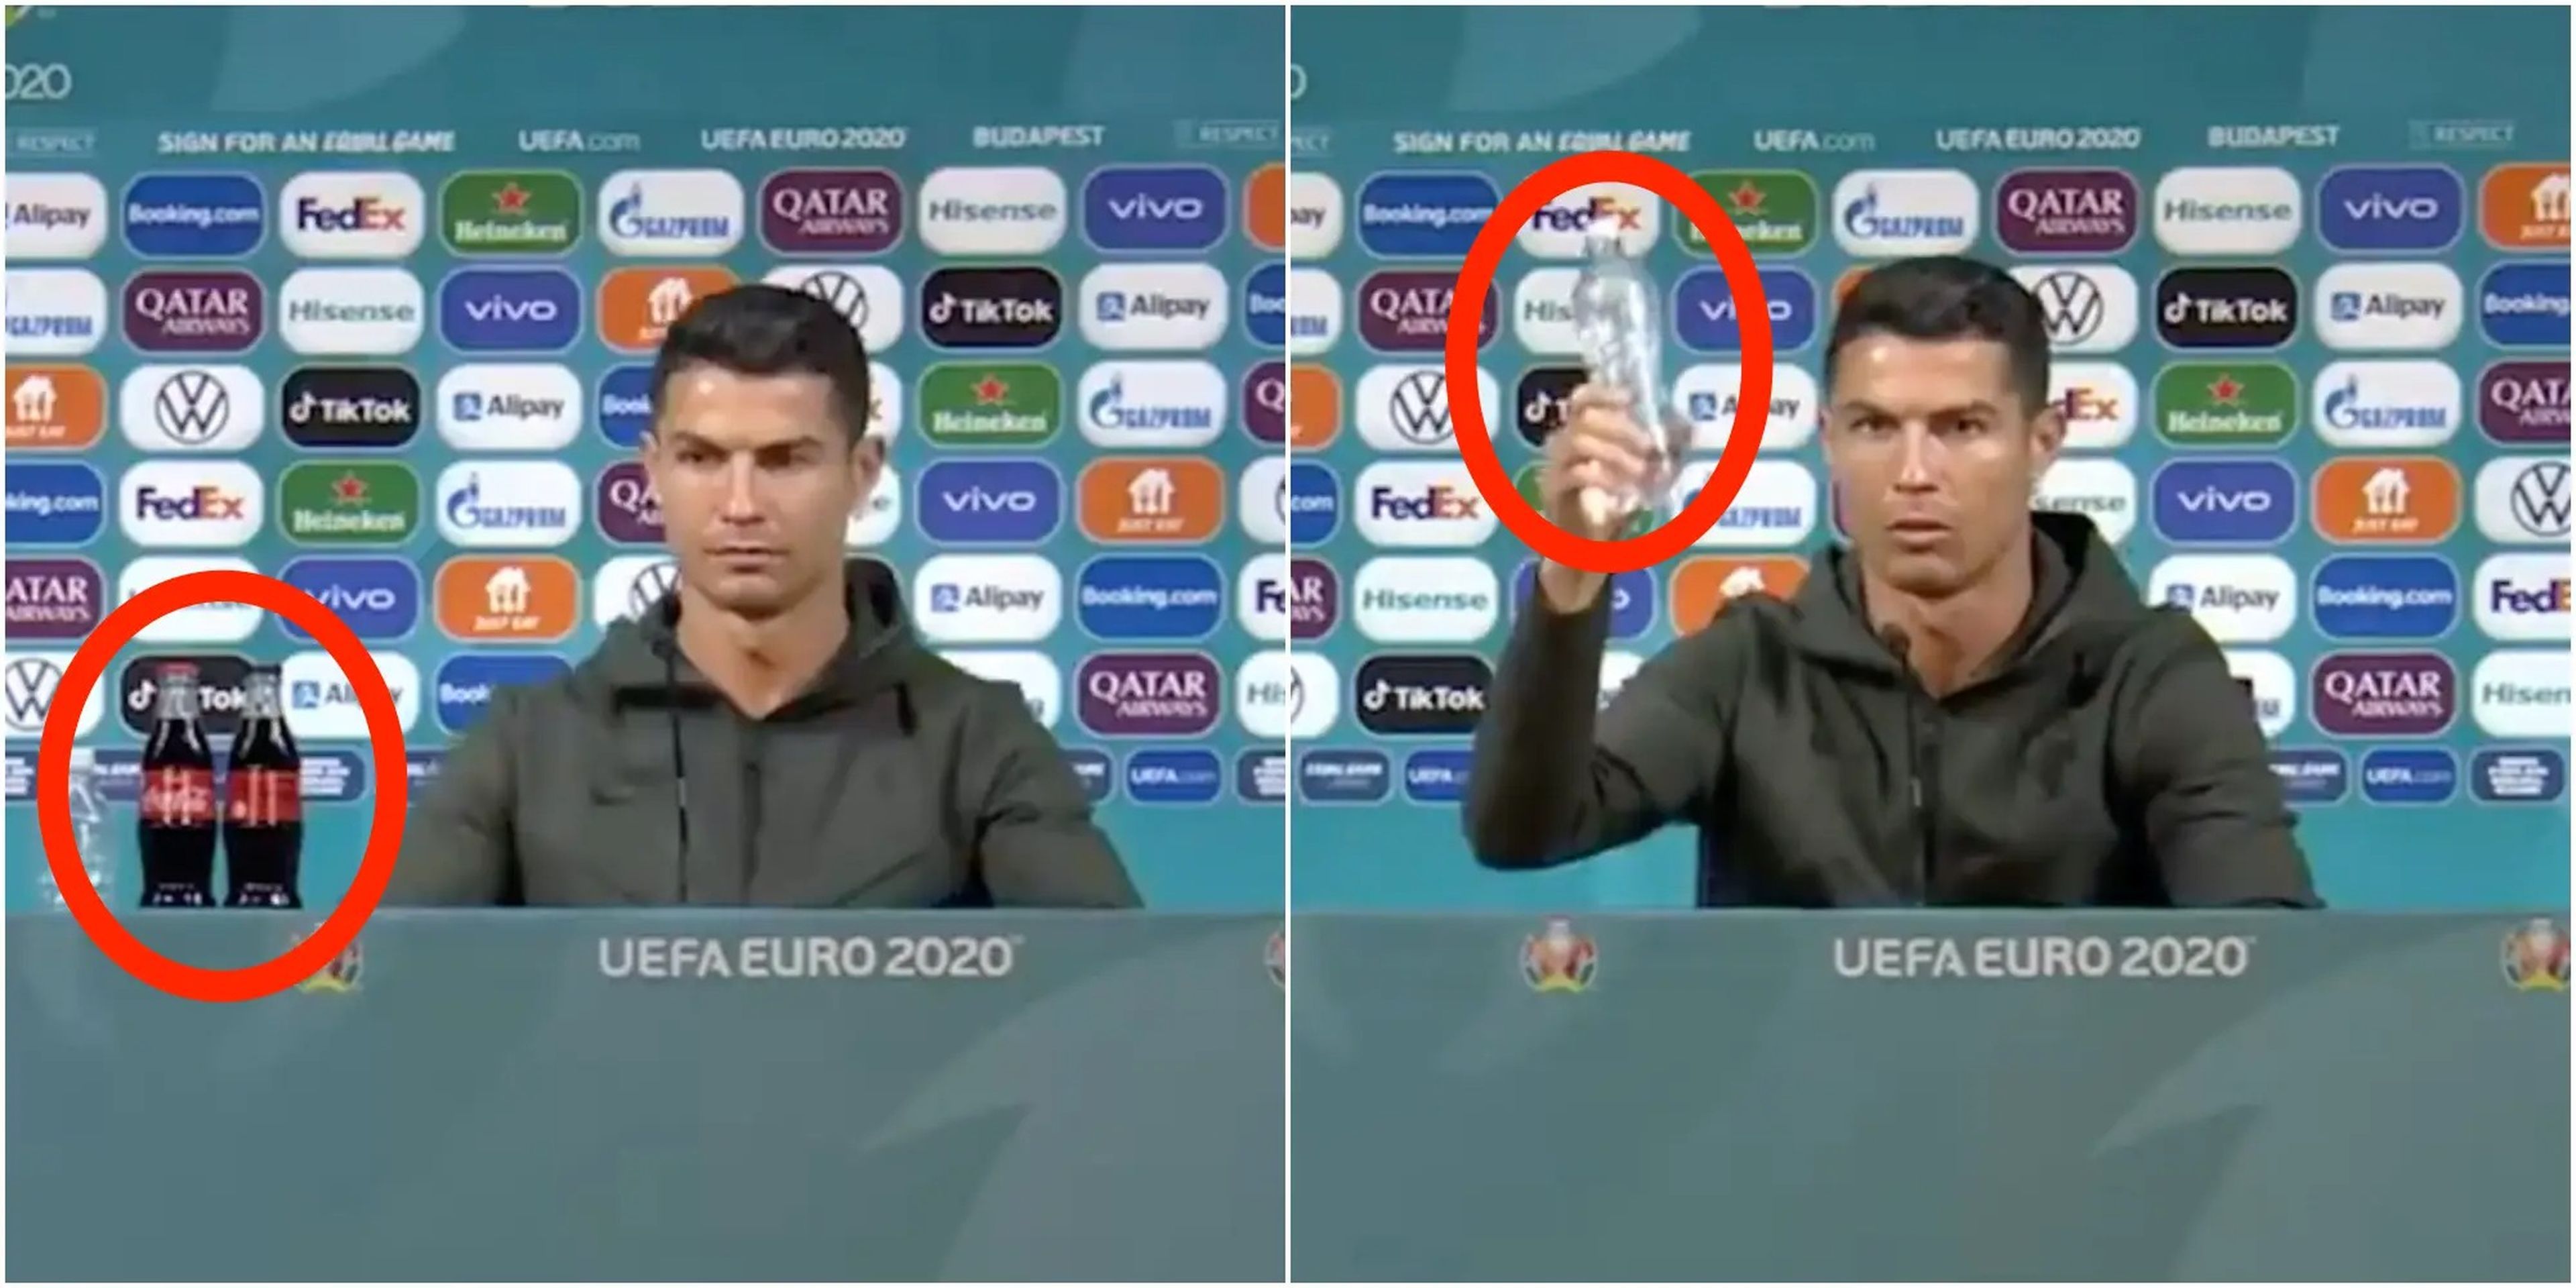 Ronaldo dejó muy claros sus sentimientos sobre la Coca-Cola en una conferencia de prensa de la Eurocopa 2020.